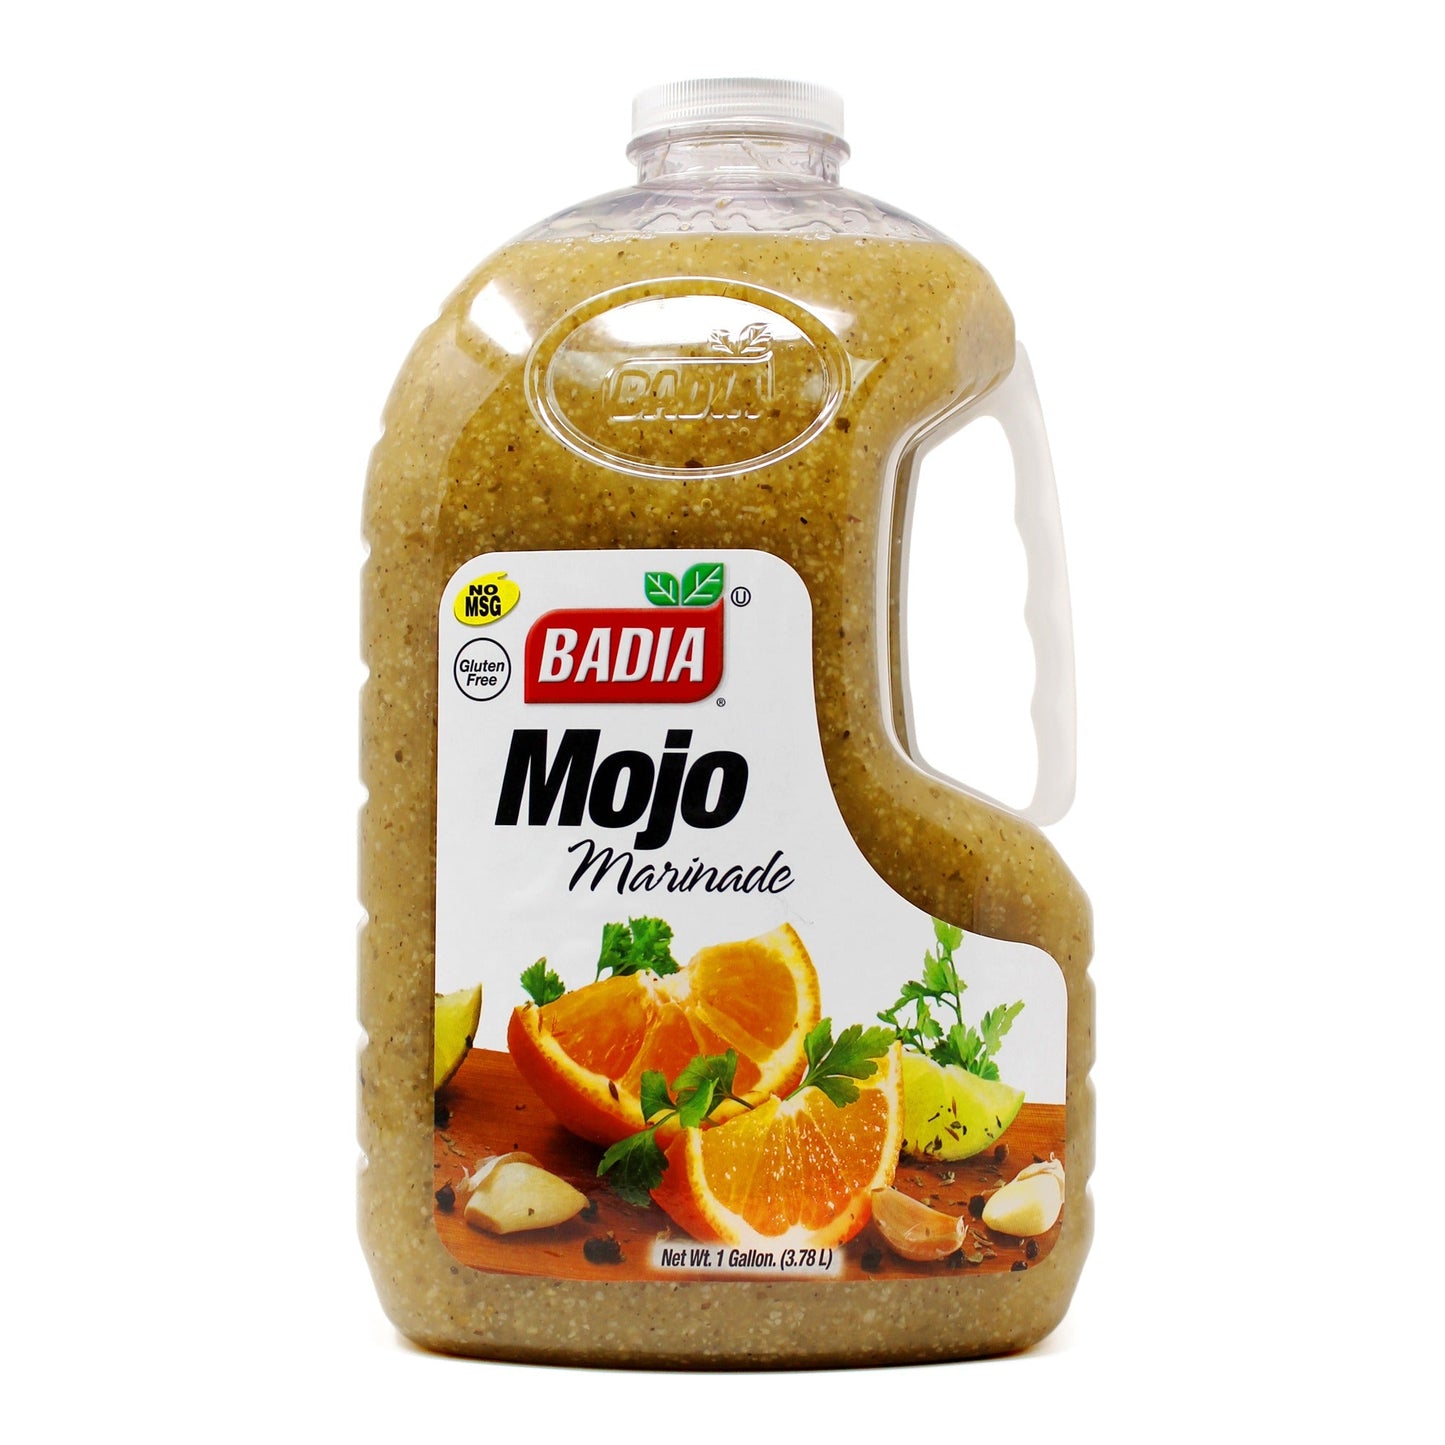 Badia - Mojo Marinade, 1 Gallon